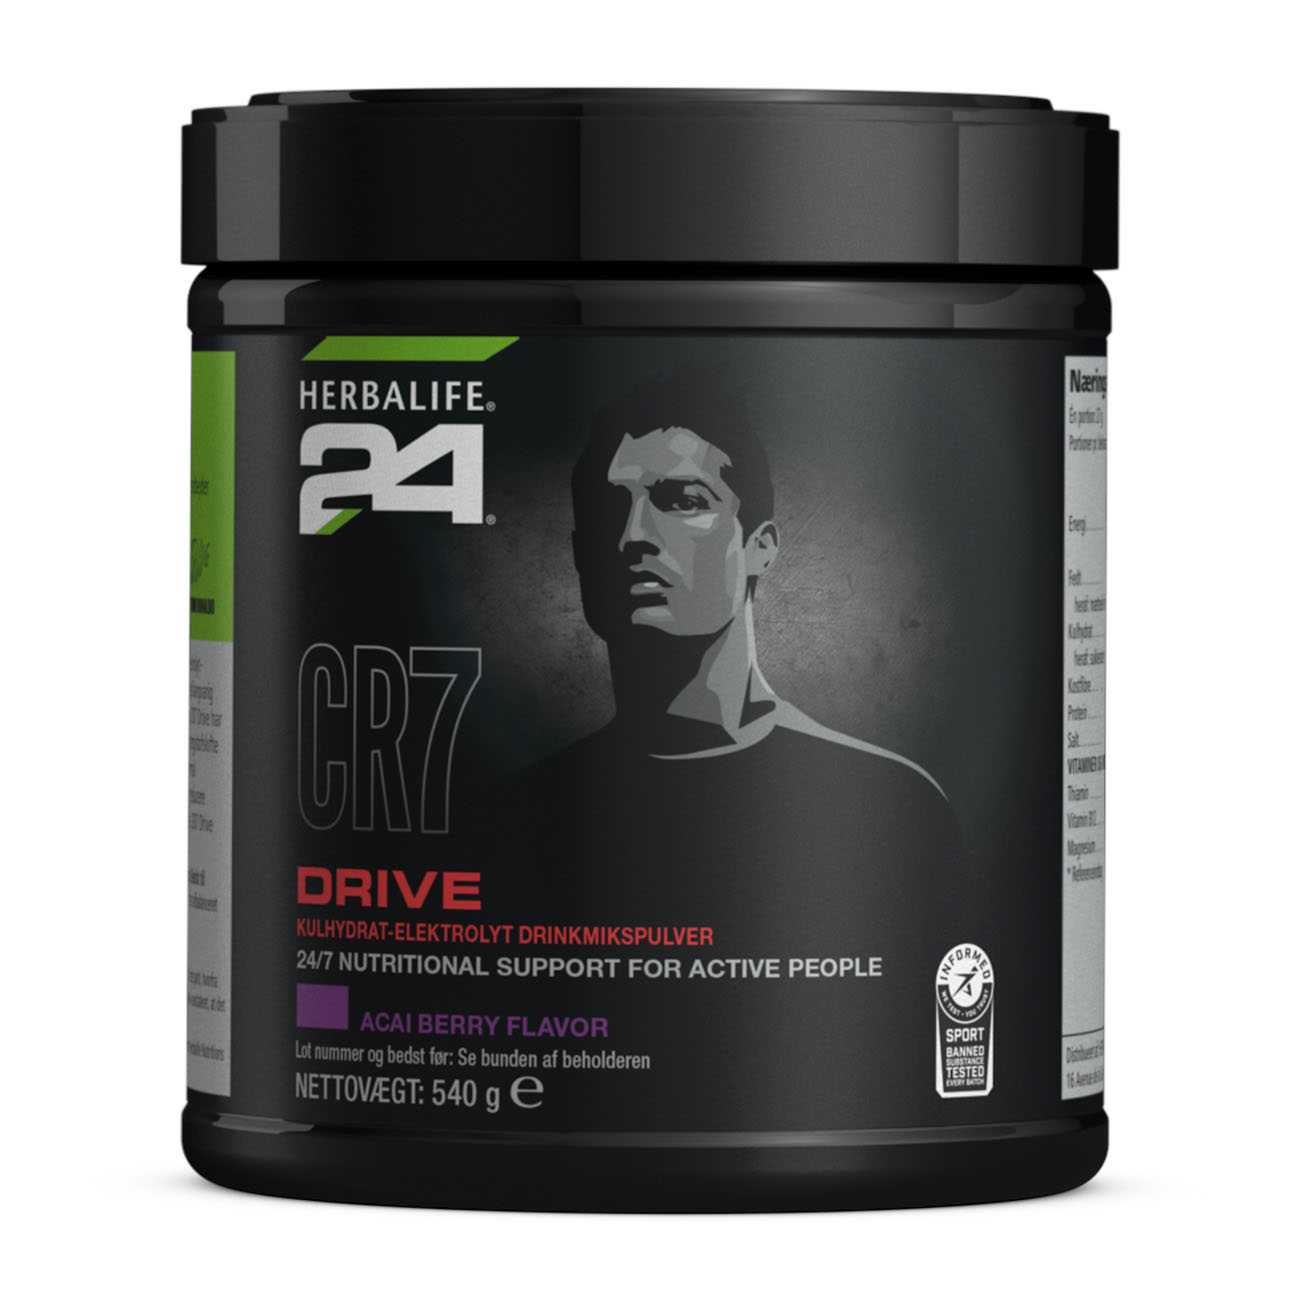 Herbalife24® CR7 Drive er en acaibærsmag med kulhydrat-elektrolyt drik udviklet af eksperter i ernæring og international fodboldstjerne: Cristiano Ronaldo.